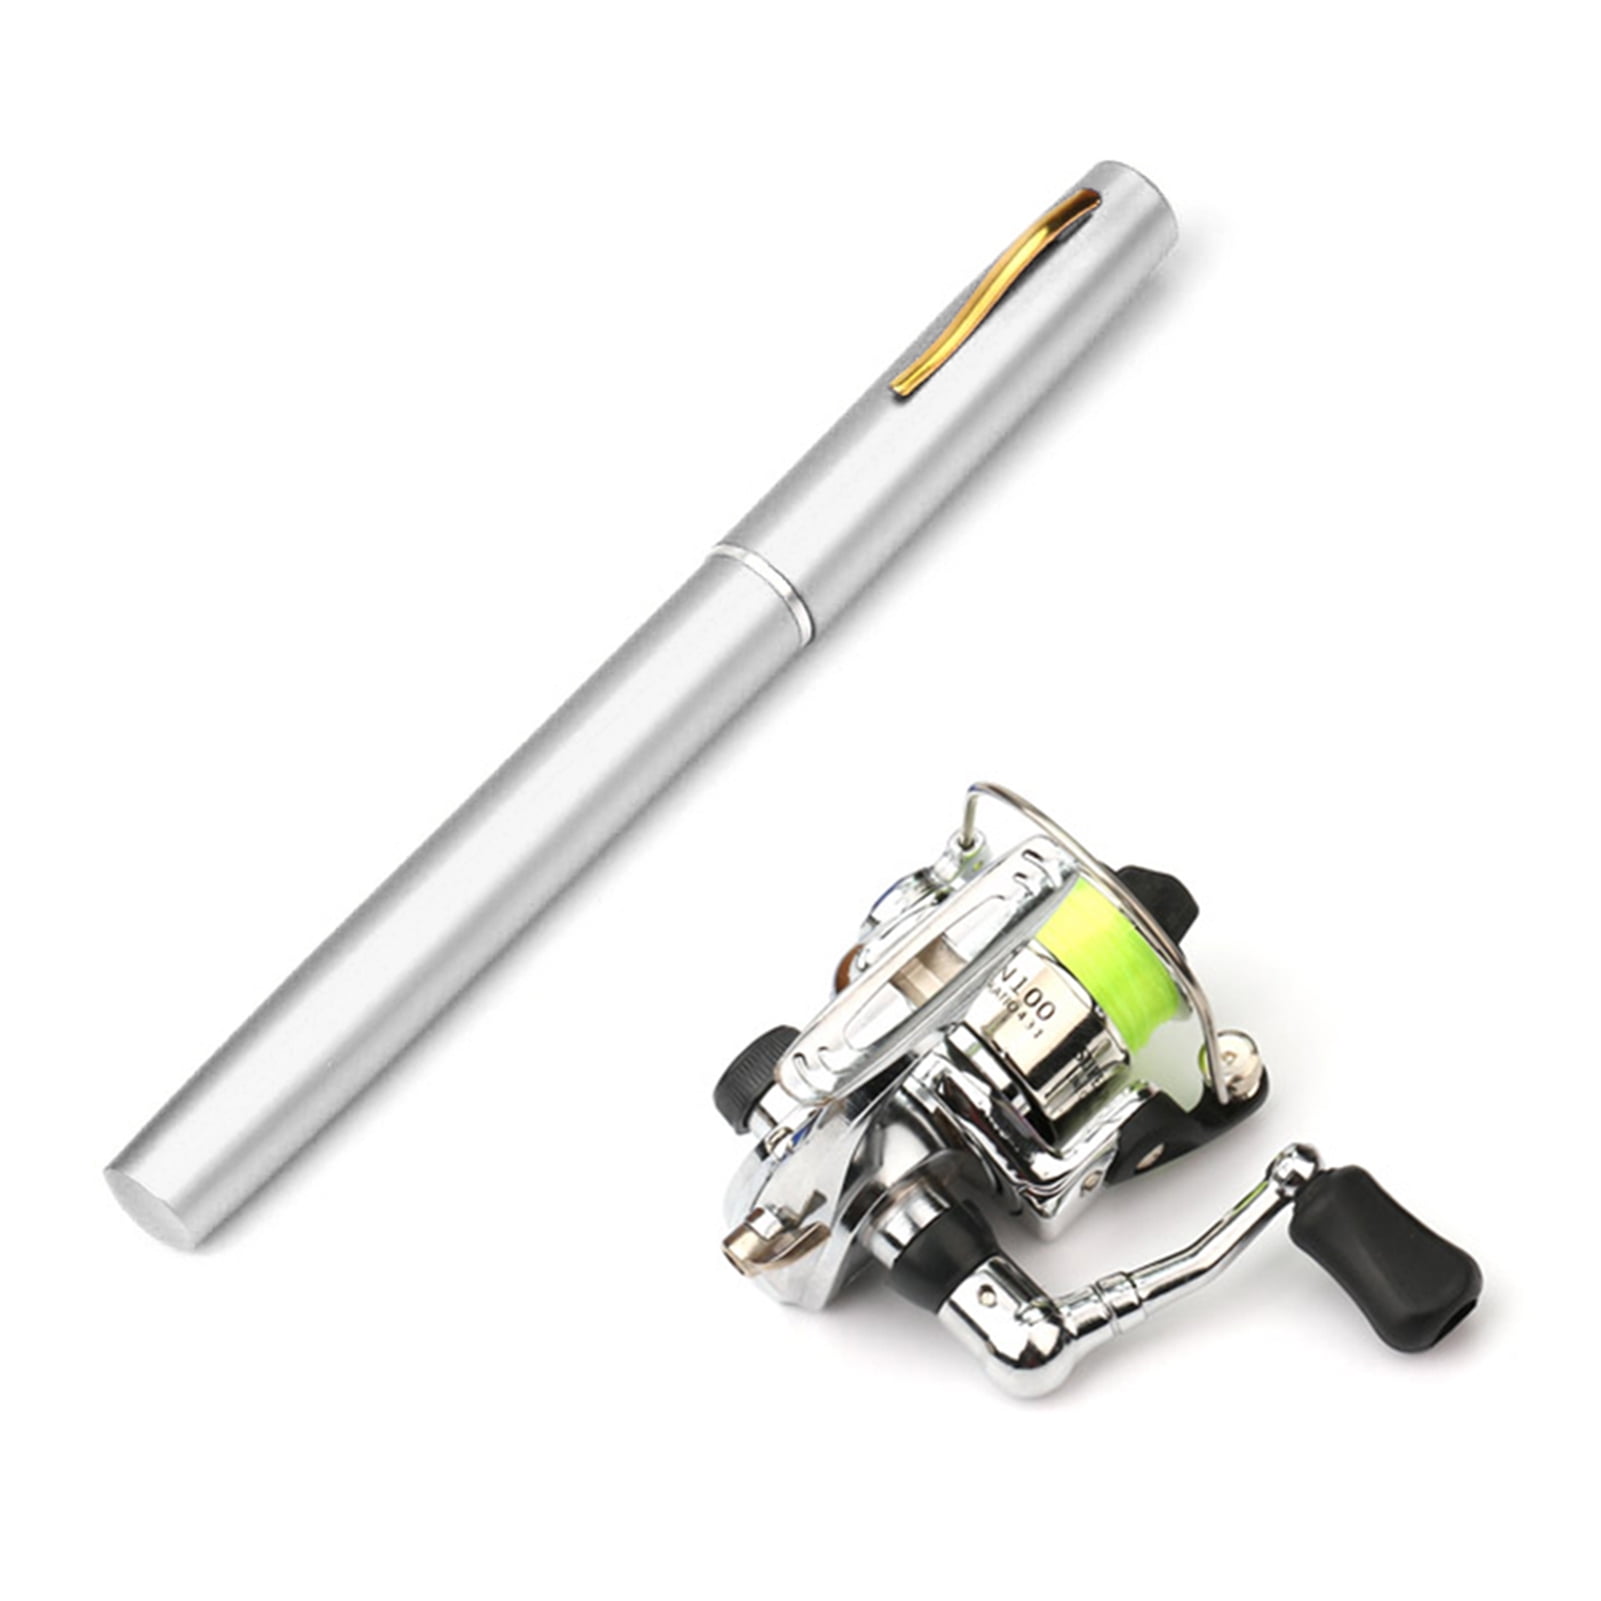  Doorslay Pen Fishing Rod Kit Mini Fishing Pole Pocket Pen Rod  Set Fishing Rod Pen Portable Telescopic Fishing Rod